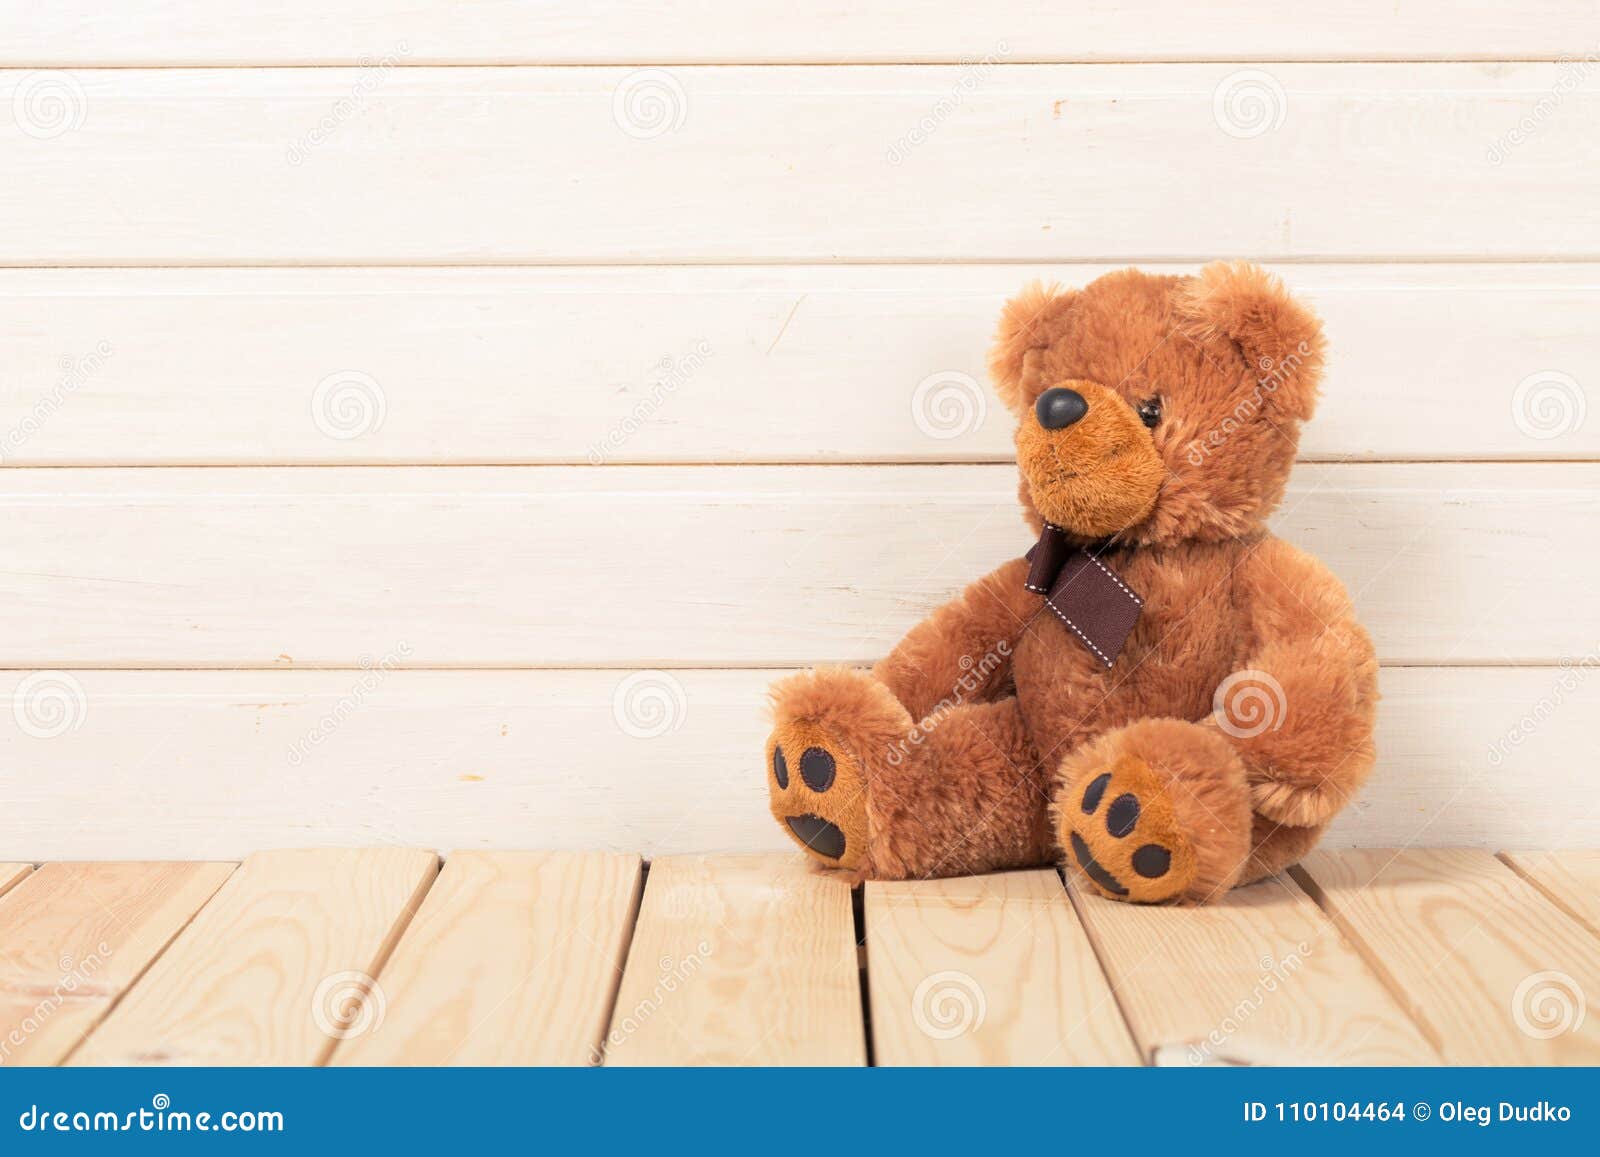 cute teddy bear background